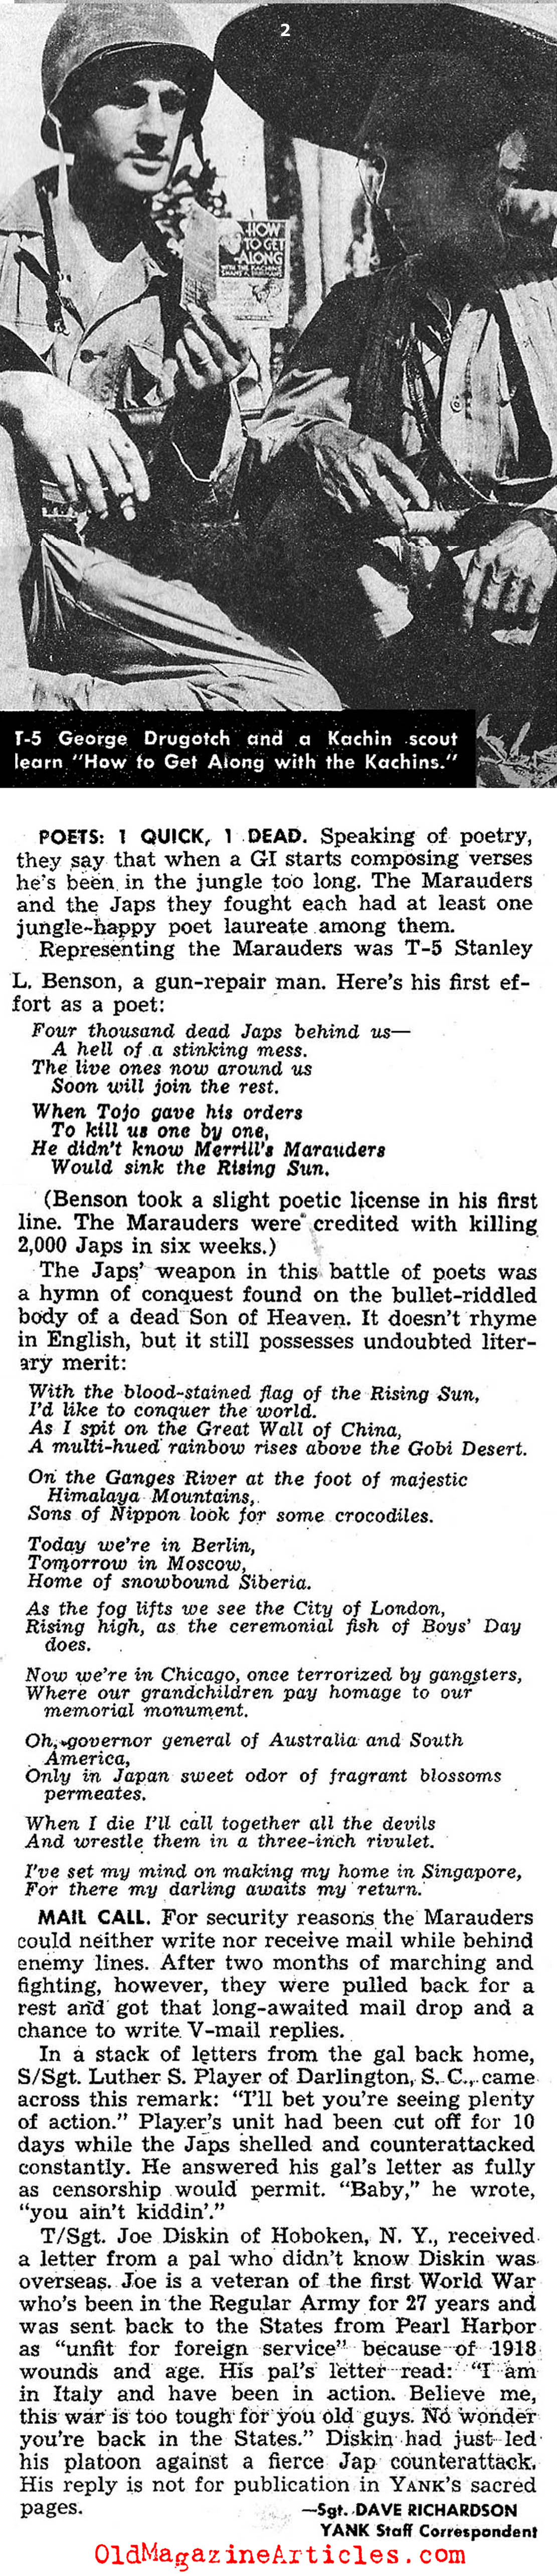 World War II in the Jungles of Burma (Yank Magazine, 1944)